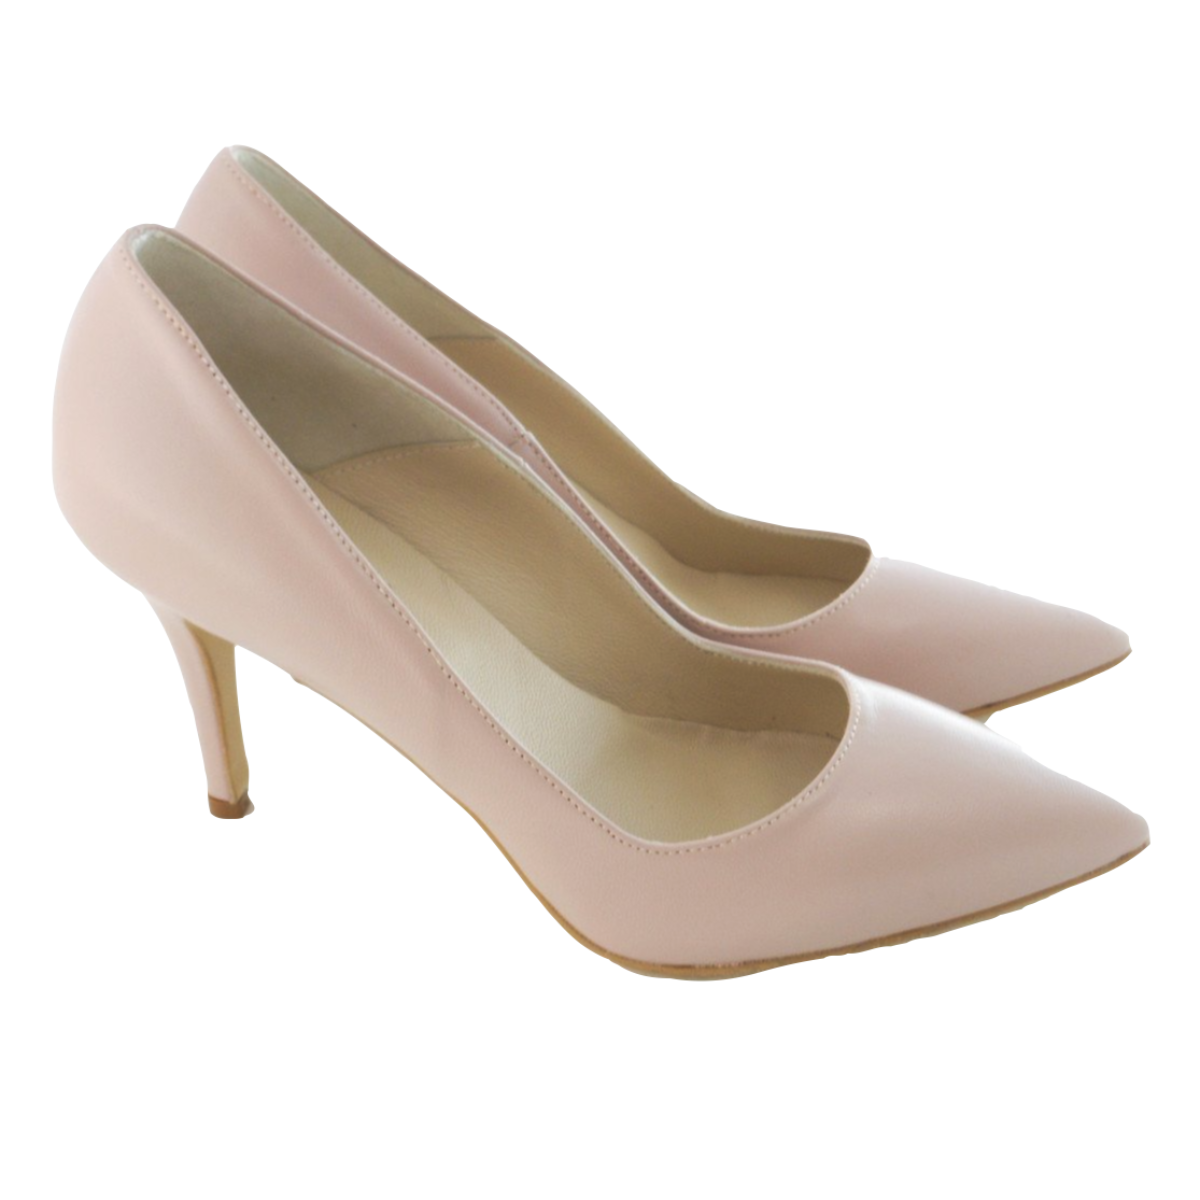 https://images.artigianoinfiera.it/Product/20901_DUE_LEONI_VARESE_DI_IANUA_SANDRO/scarpe-decollettes-donna-con-tacco-alto-8cm-in-nappa-colore-beige-1.png